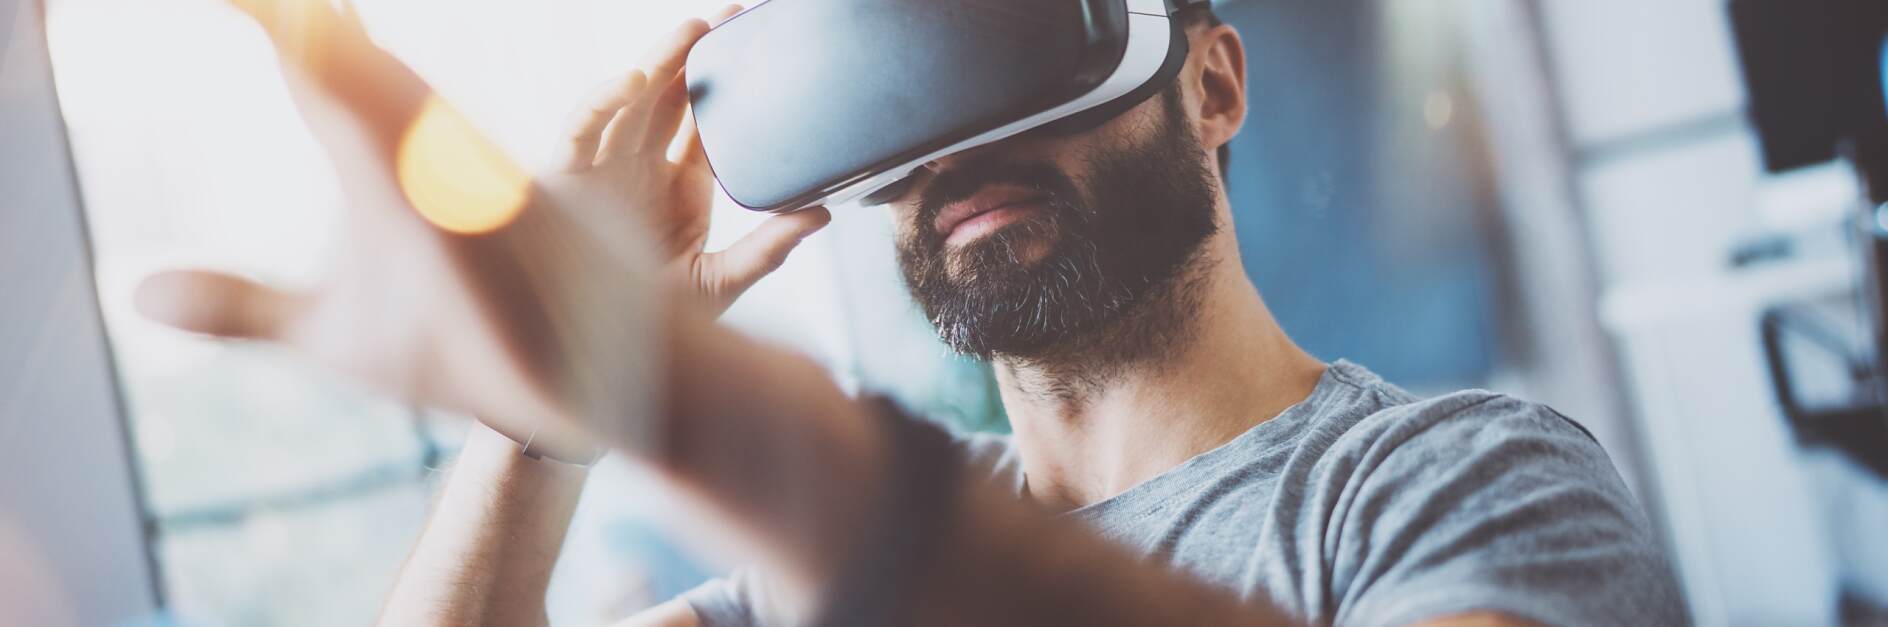 Nahaufnahme eines bärtigen jungen Mannes mit einer Virtual-Reality-Brille an einem modernen Coworking-Arbeitsplatz. Smartphone mit VR-Headset. Horizontal, verschwommen.